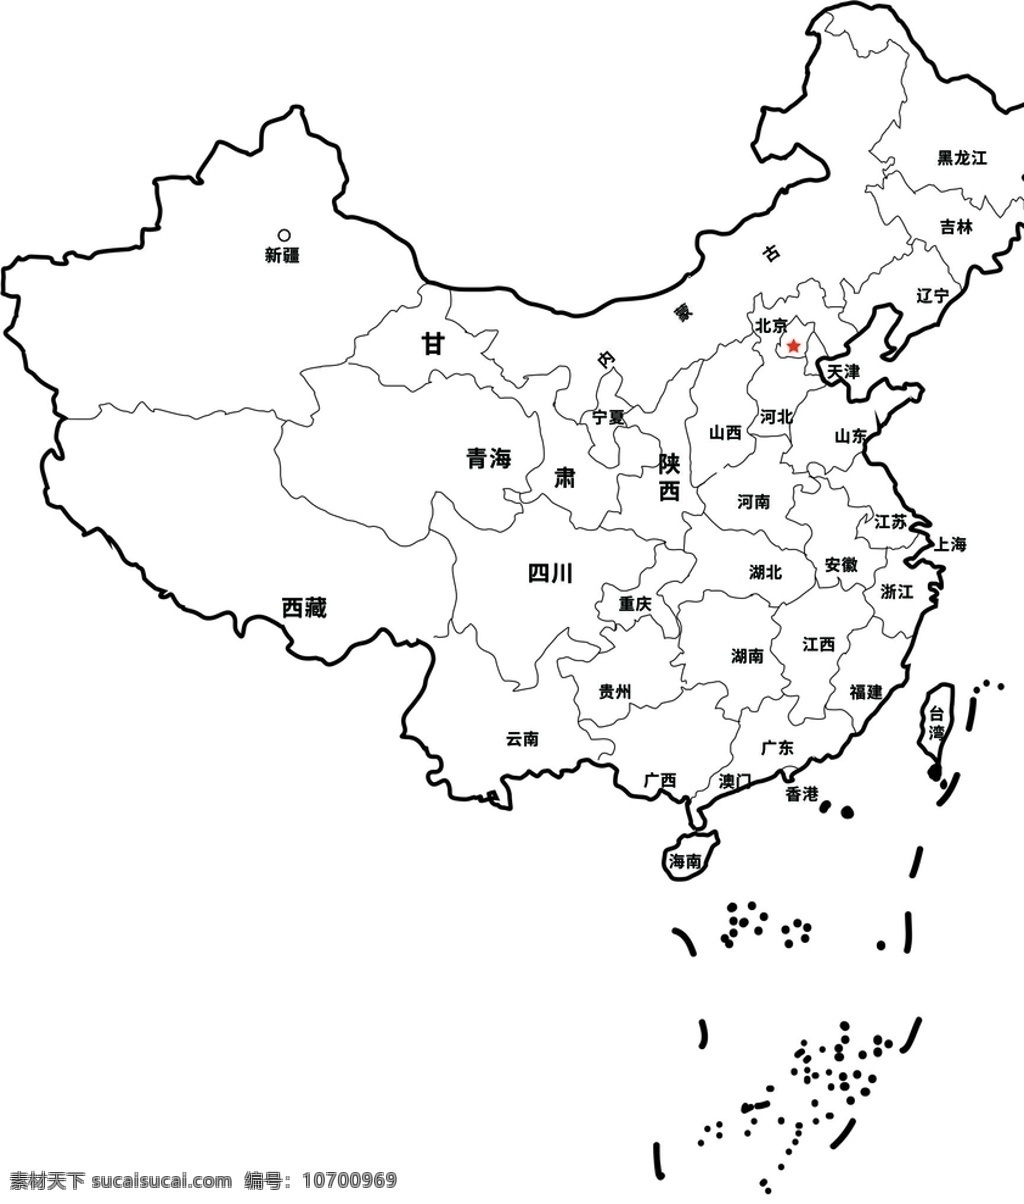 中国 简 笔画 矢量图 黑白 线 稿 简笔画 线稿 标志图标 公共标识标志